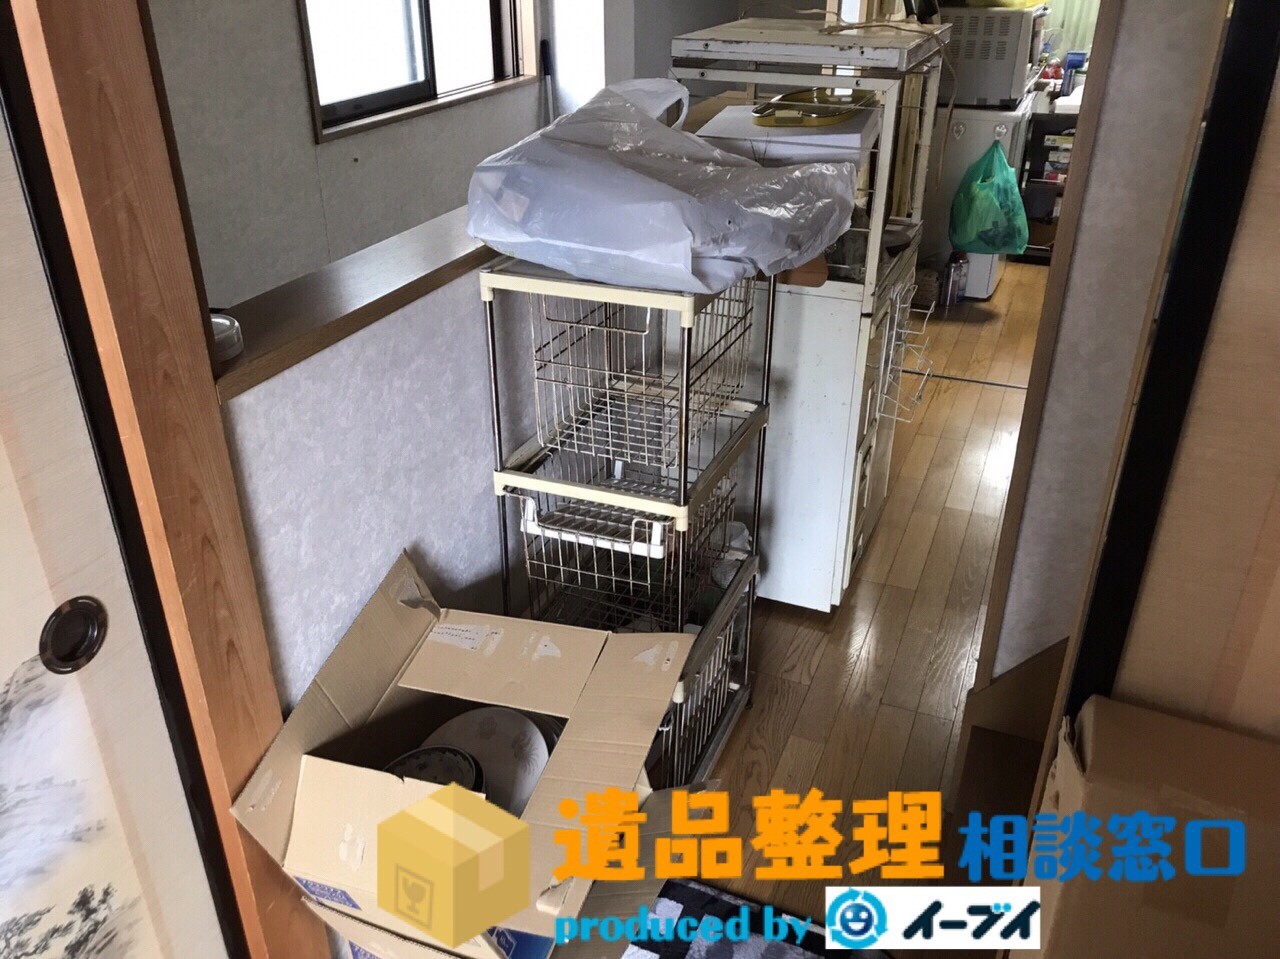 京都府京田辺市で遺品整理の依頼を受け部屋の片付けや処分をしました。のアイキャッチ